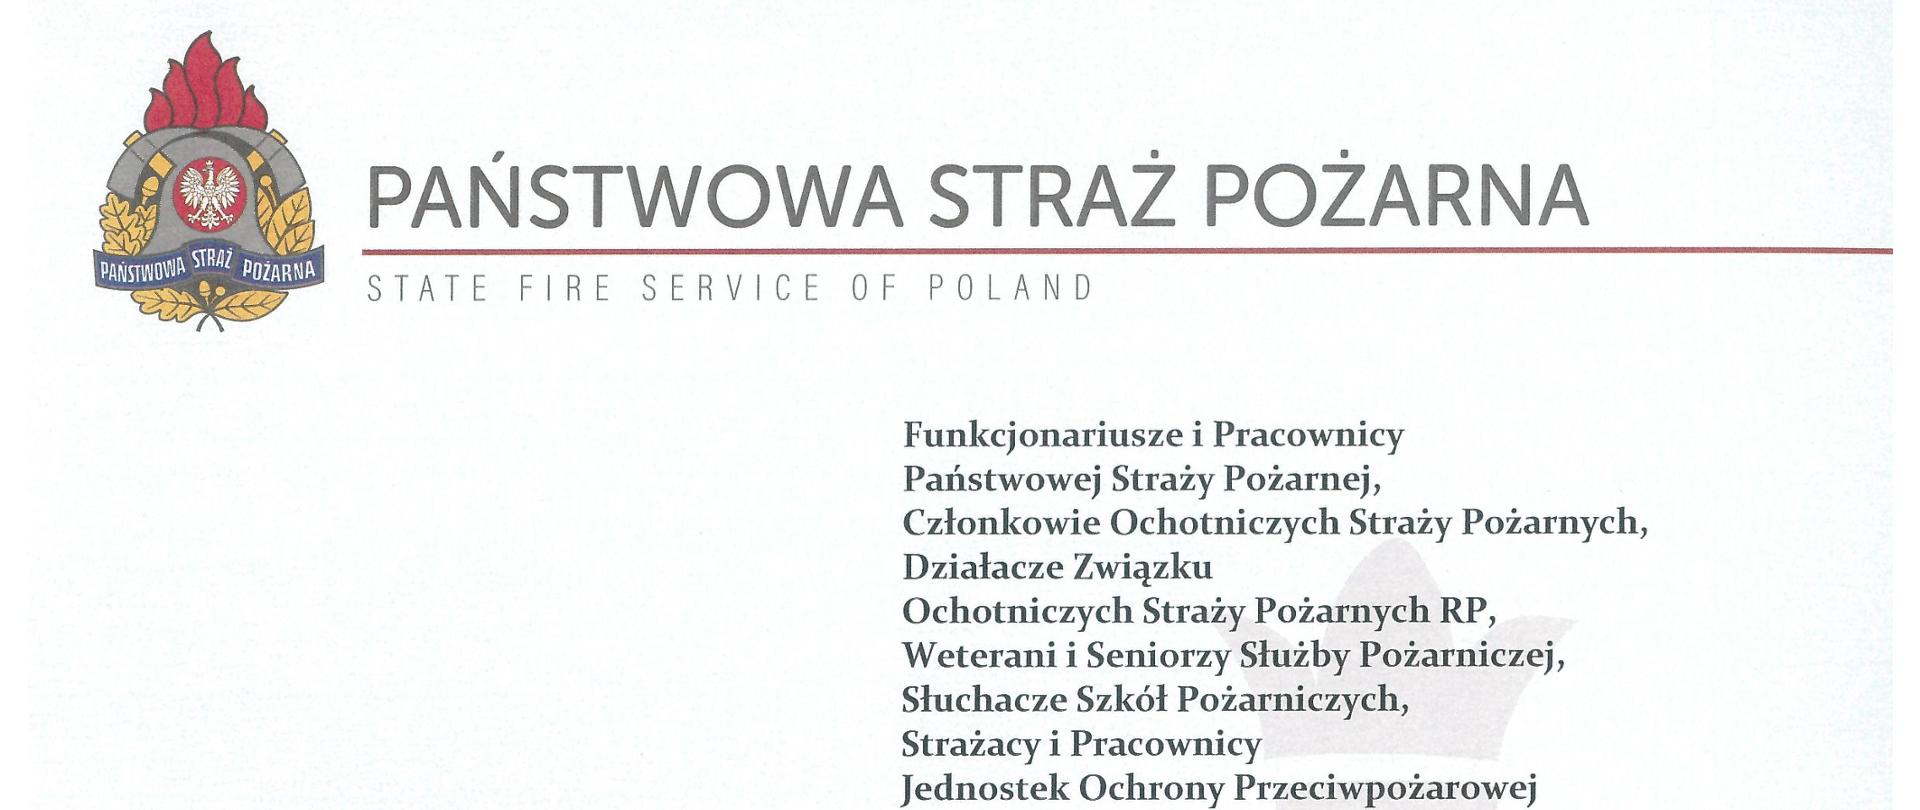 Po lewej stronie widoczne logo Państwowej Straży Pożarnej, obok napis Państwowa Straż Pożarna, poniżej czerwona linia, poniżej napis w języku angielskim State Fire Service of Poland.